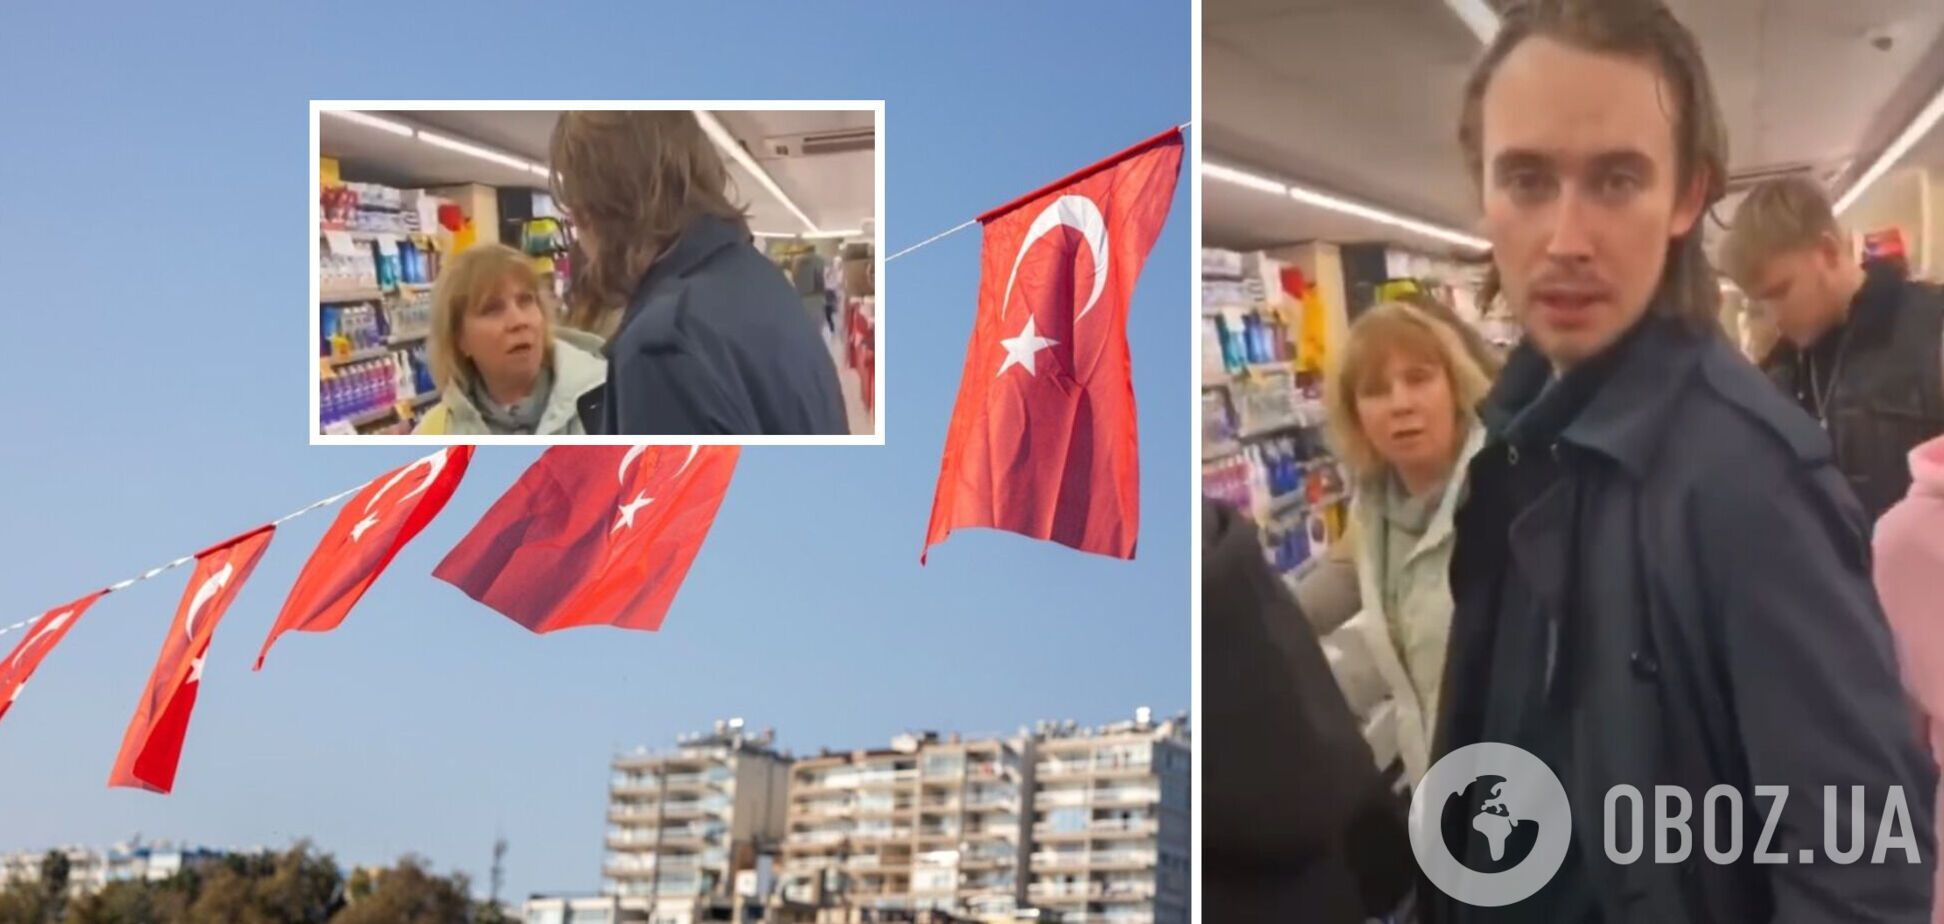 Российский 'беженец' устроил скандал в турецком супермаркете: кричал и обзывал местных жителей. Видео